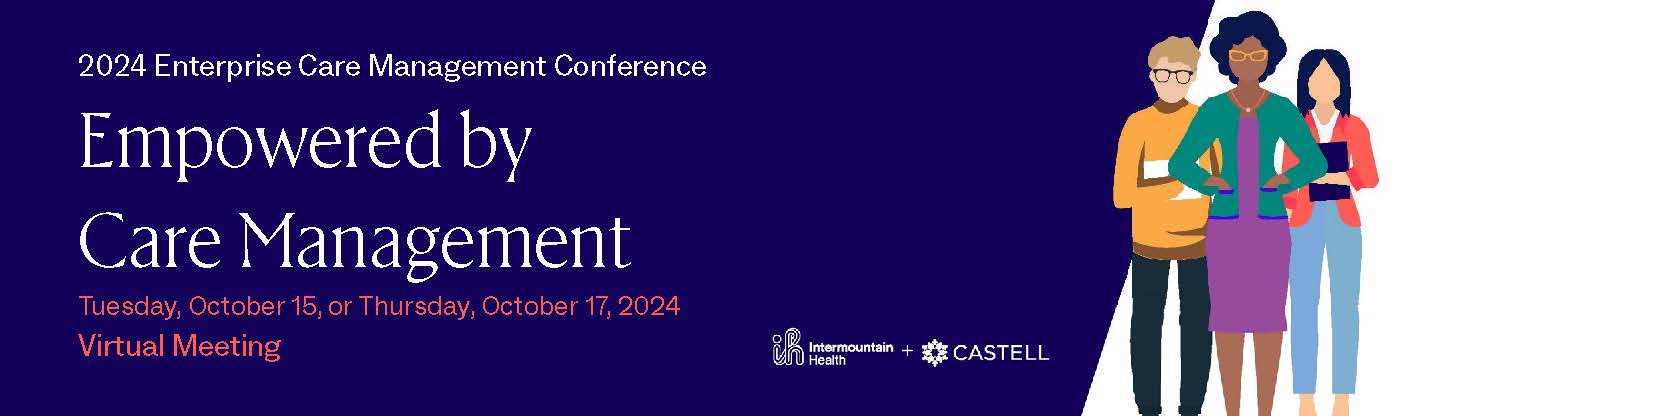 2024 Enterprise Care Management Conference Banner